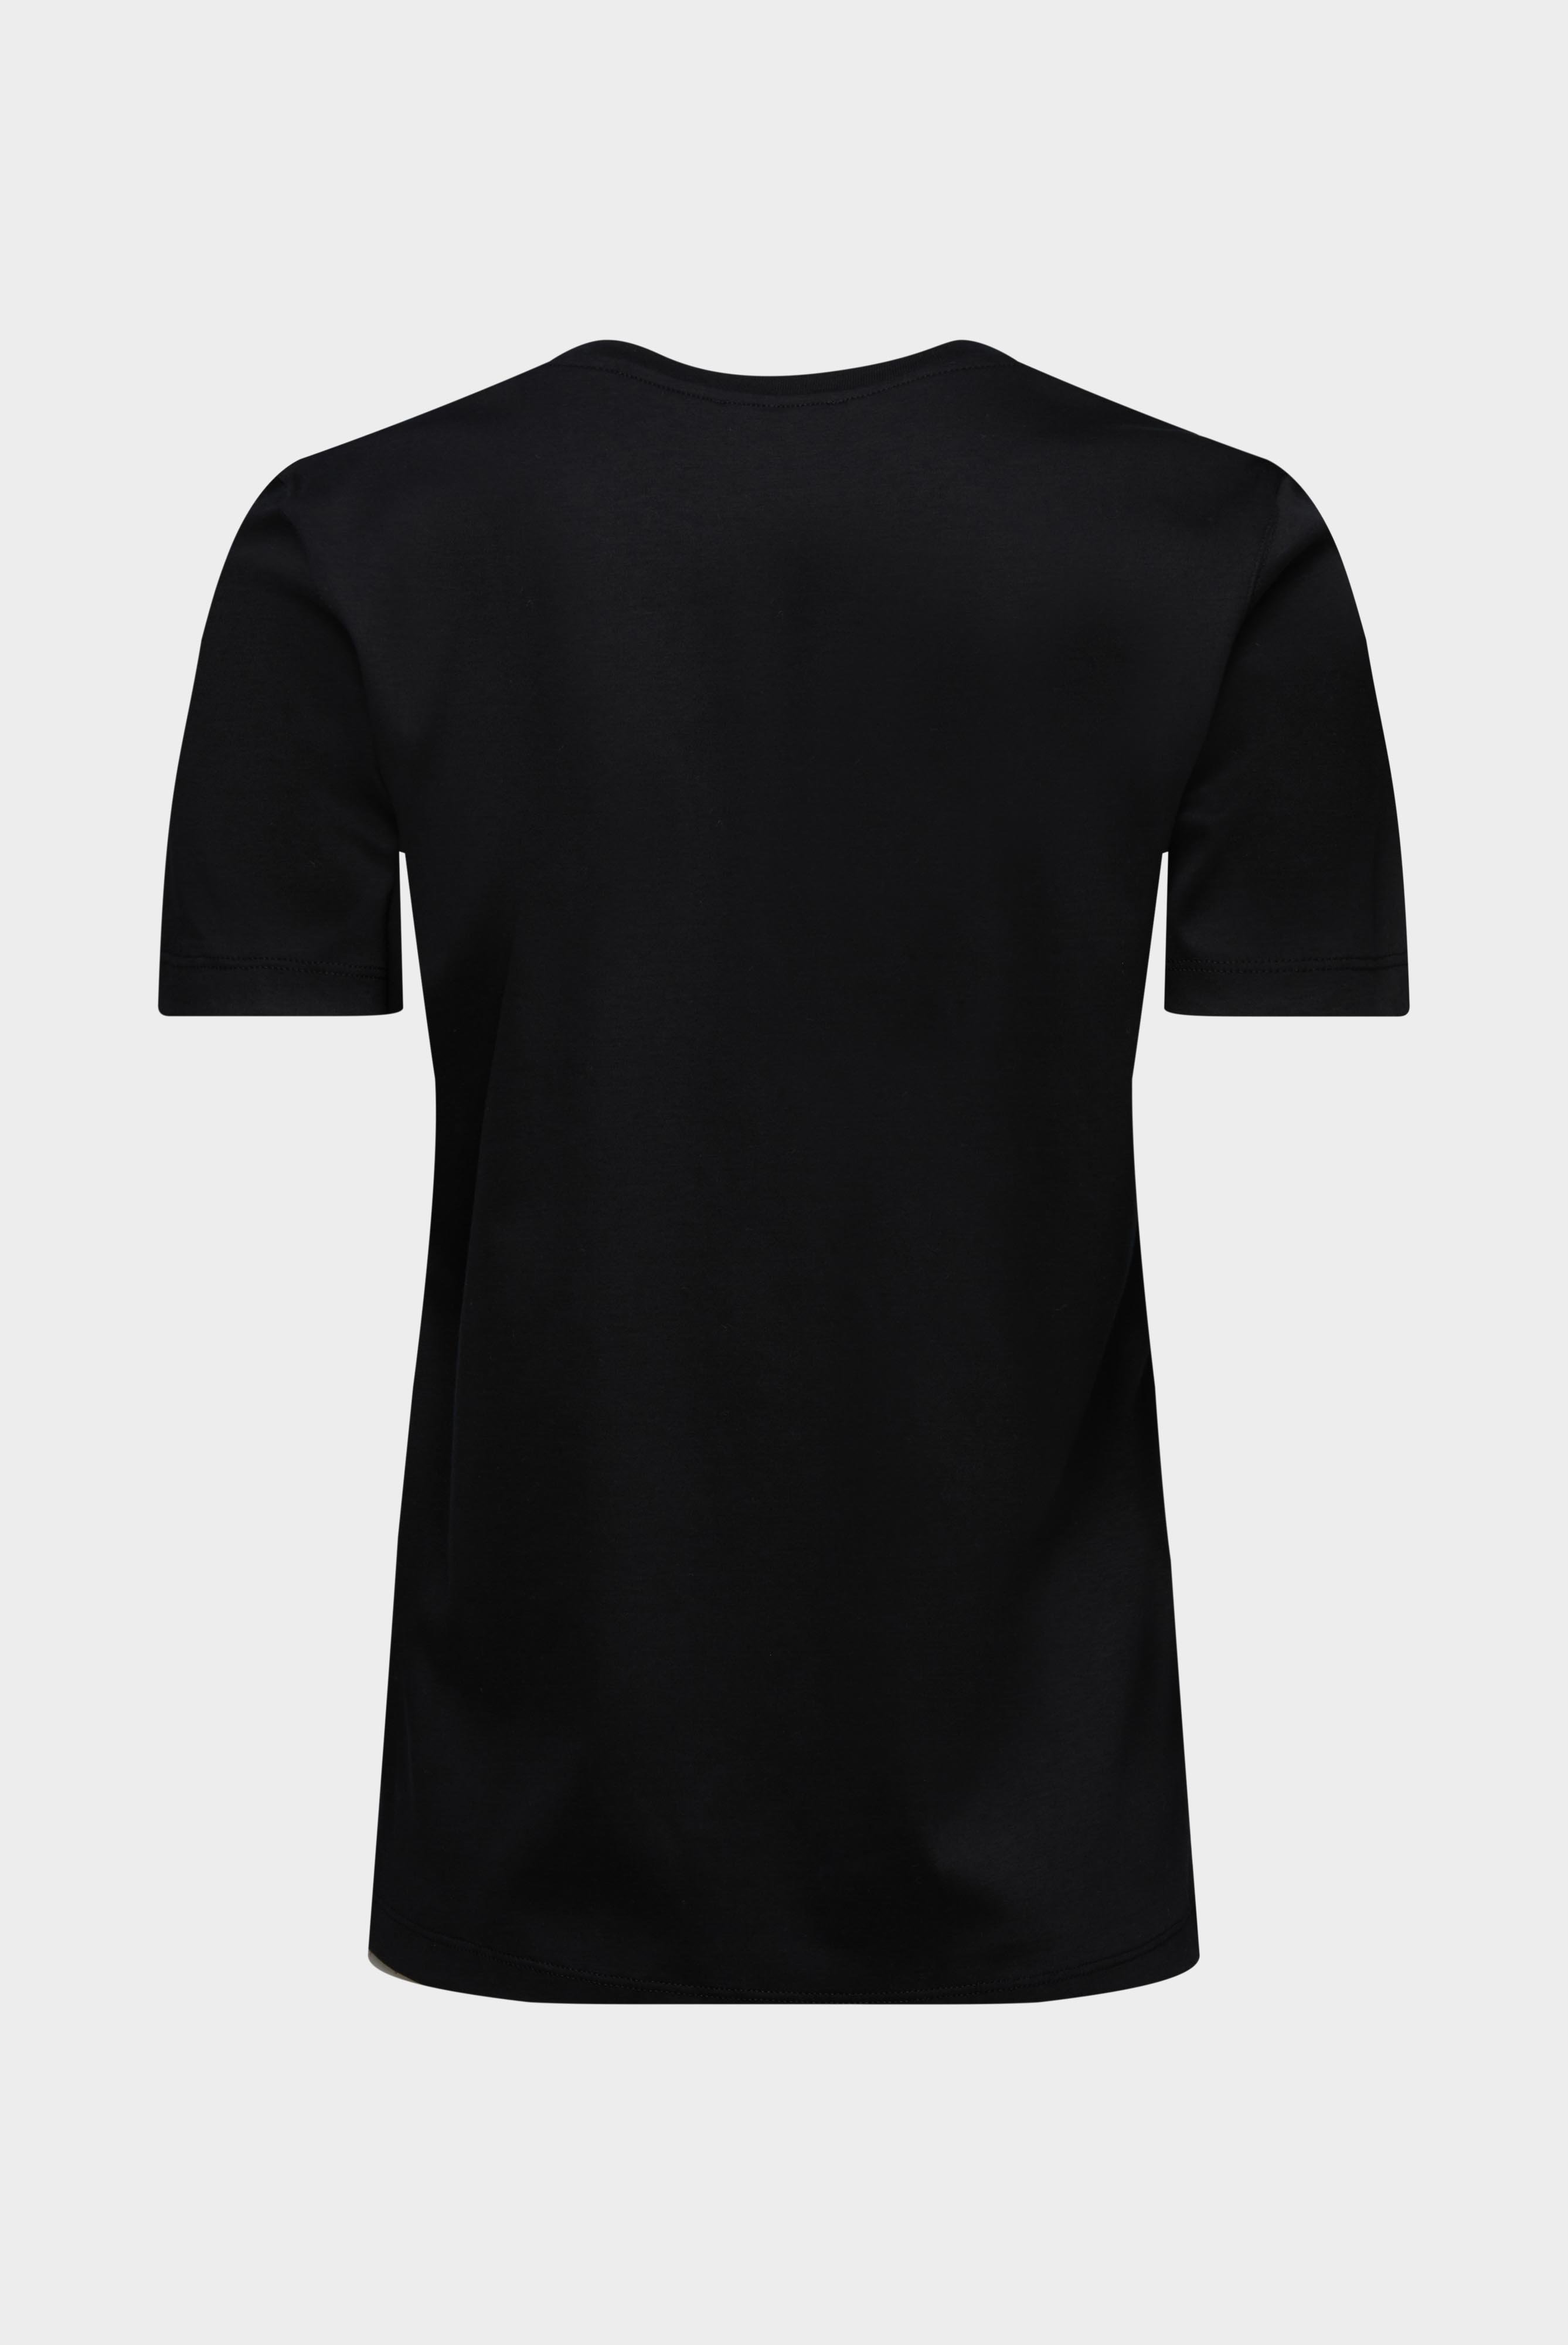 Tops & T-Shirts+Jersey T-Shirt+05.6384.18.180031.099.48